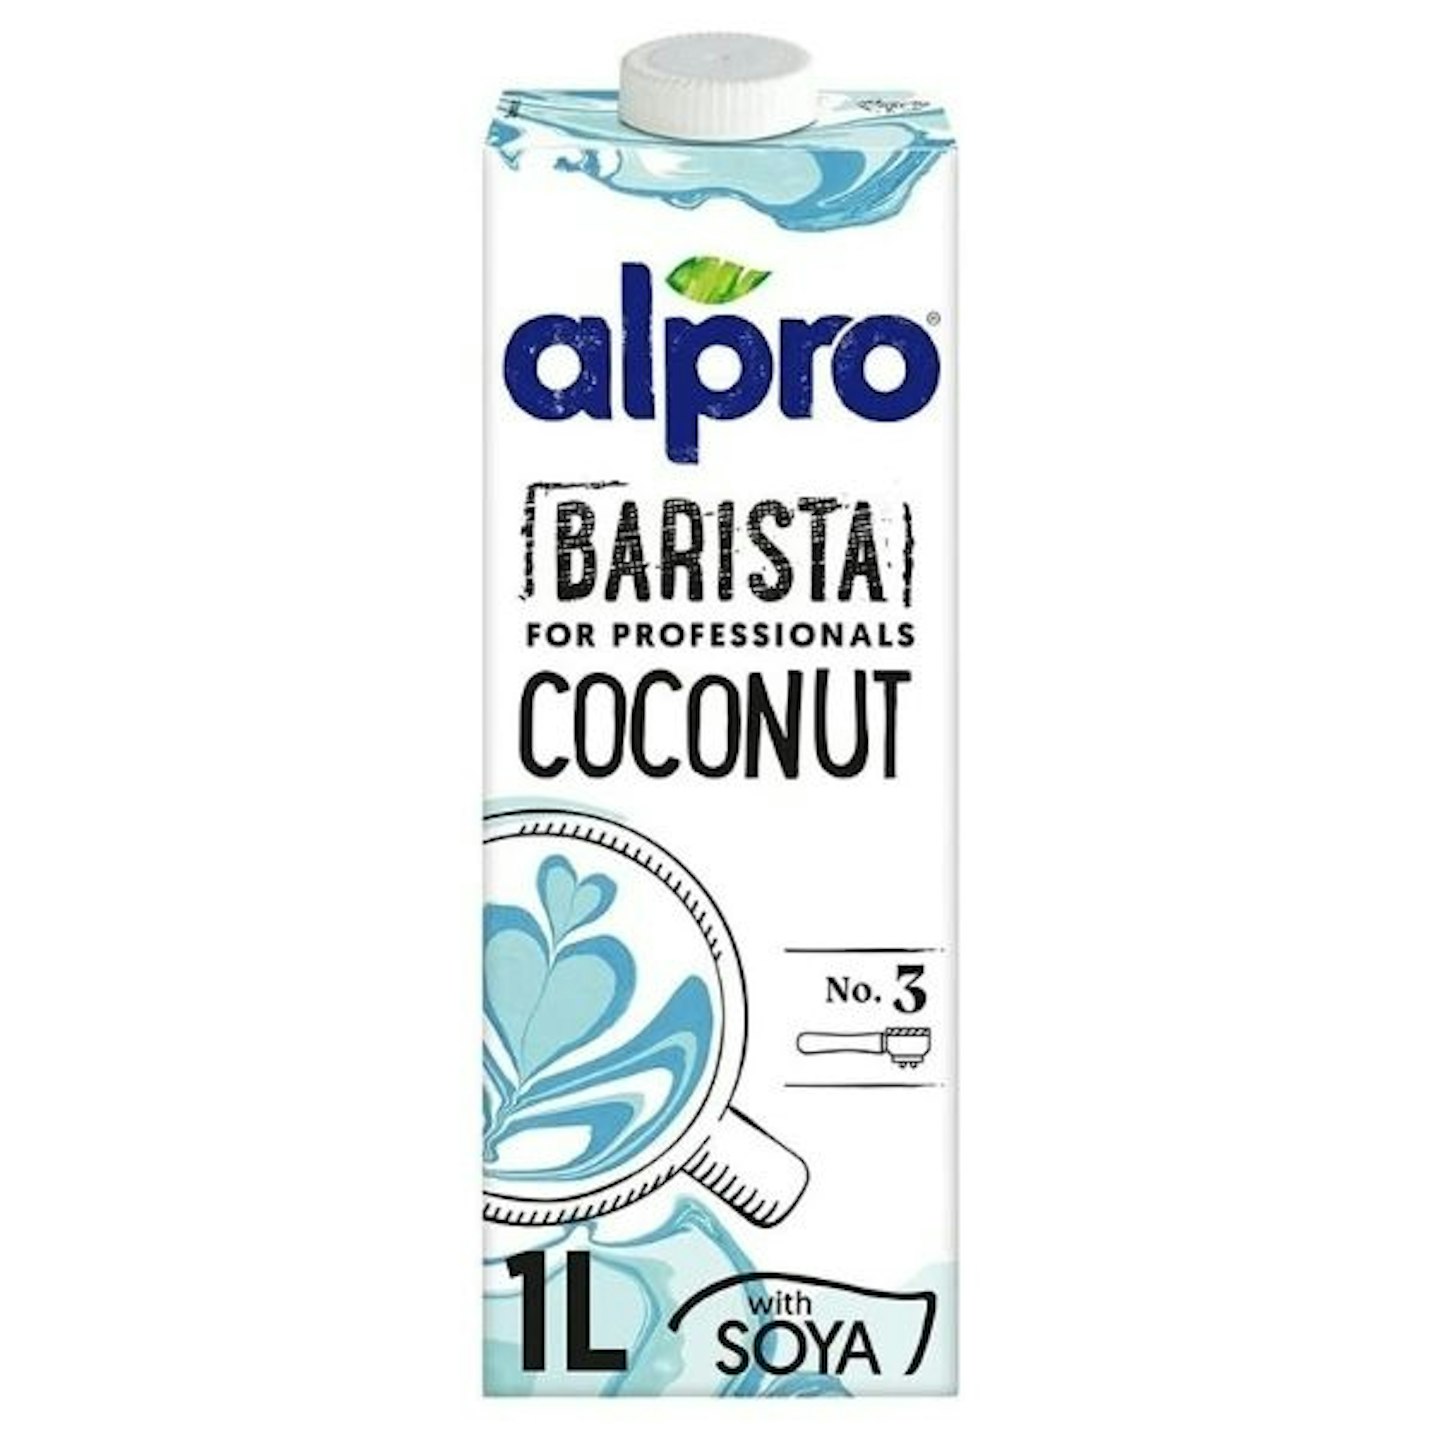 Alpro Professional Coconut Milk 1ltr (8)